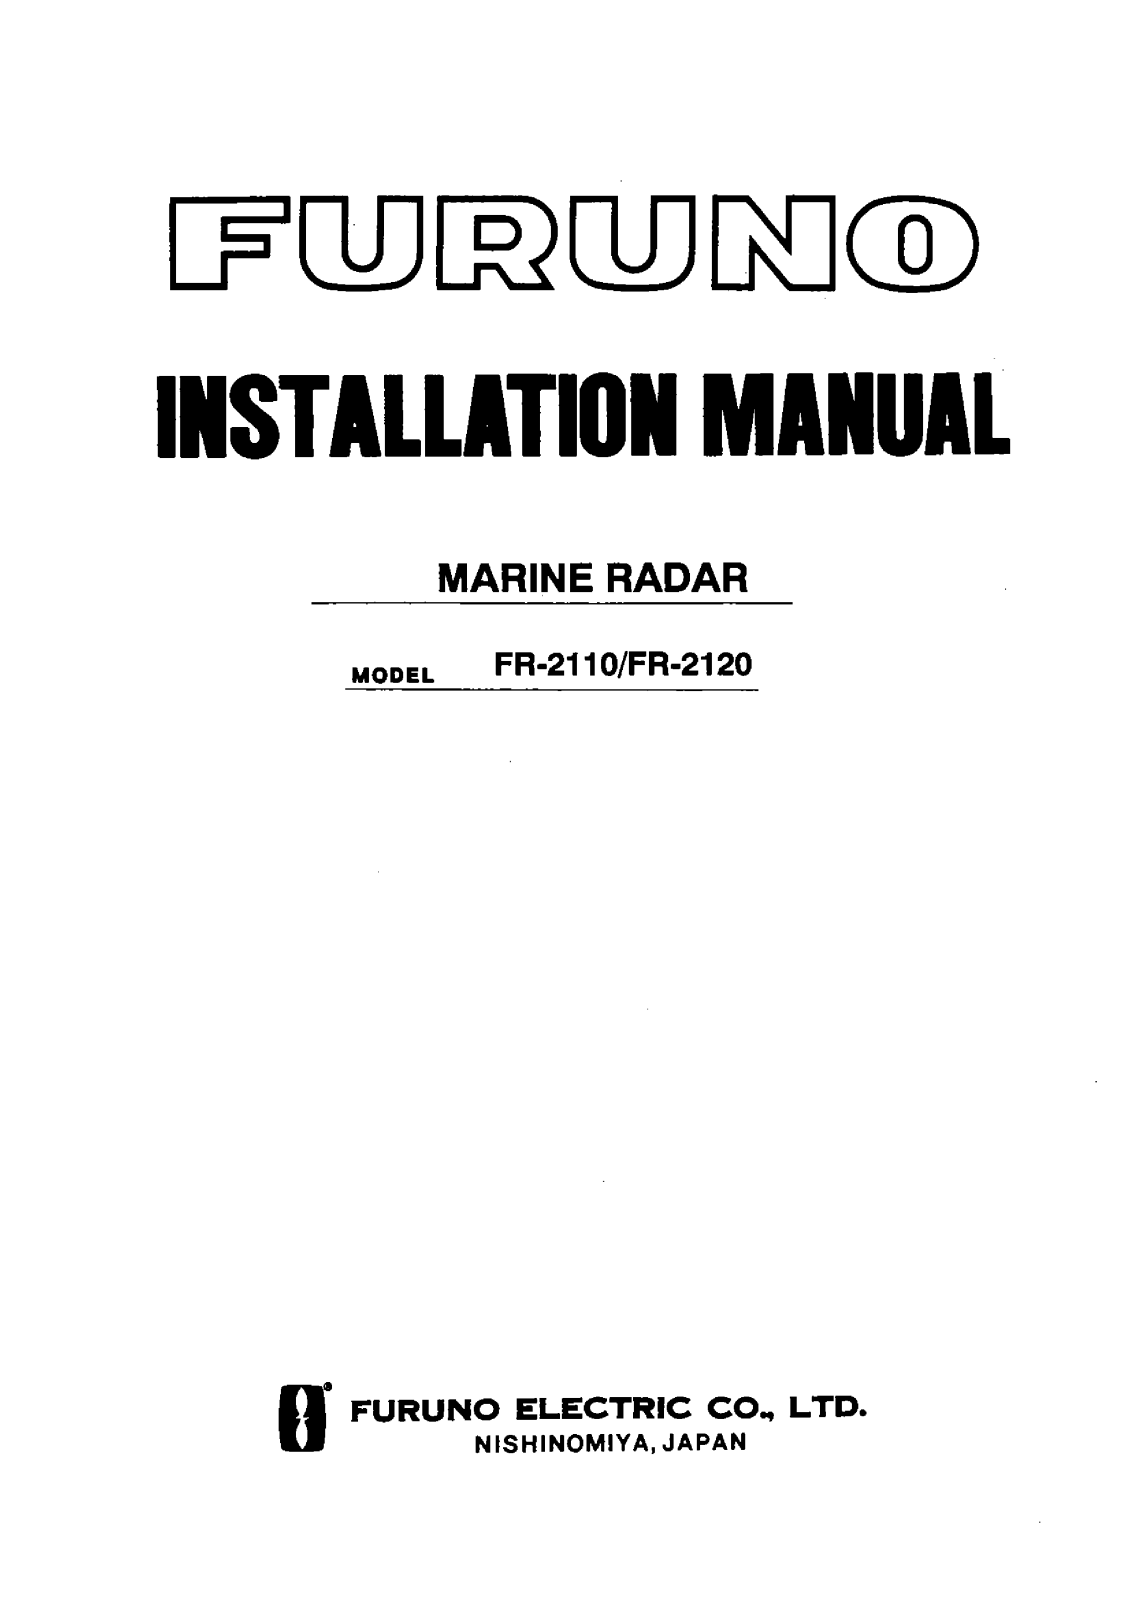 Furuno FR-2110, FR-2120 User Manual